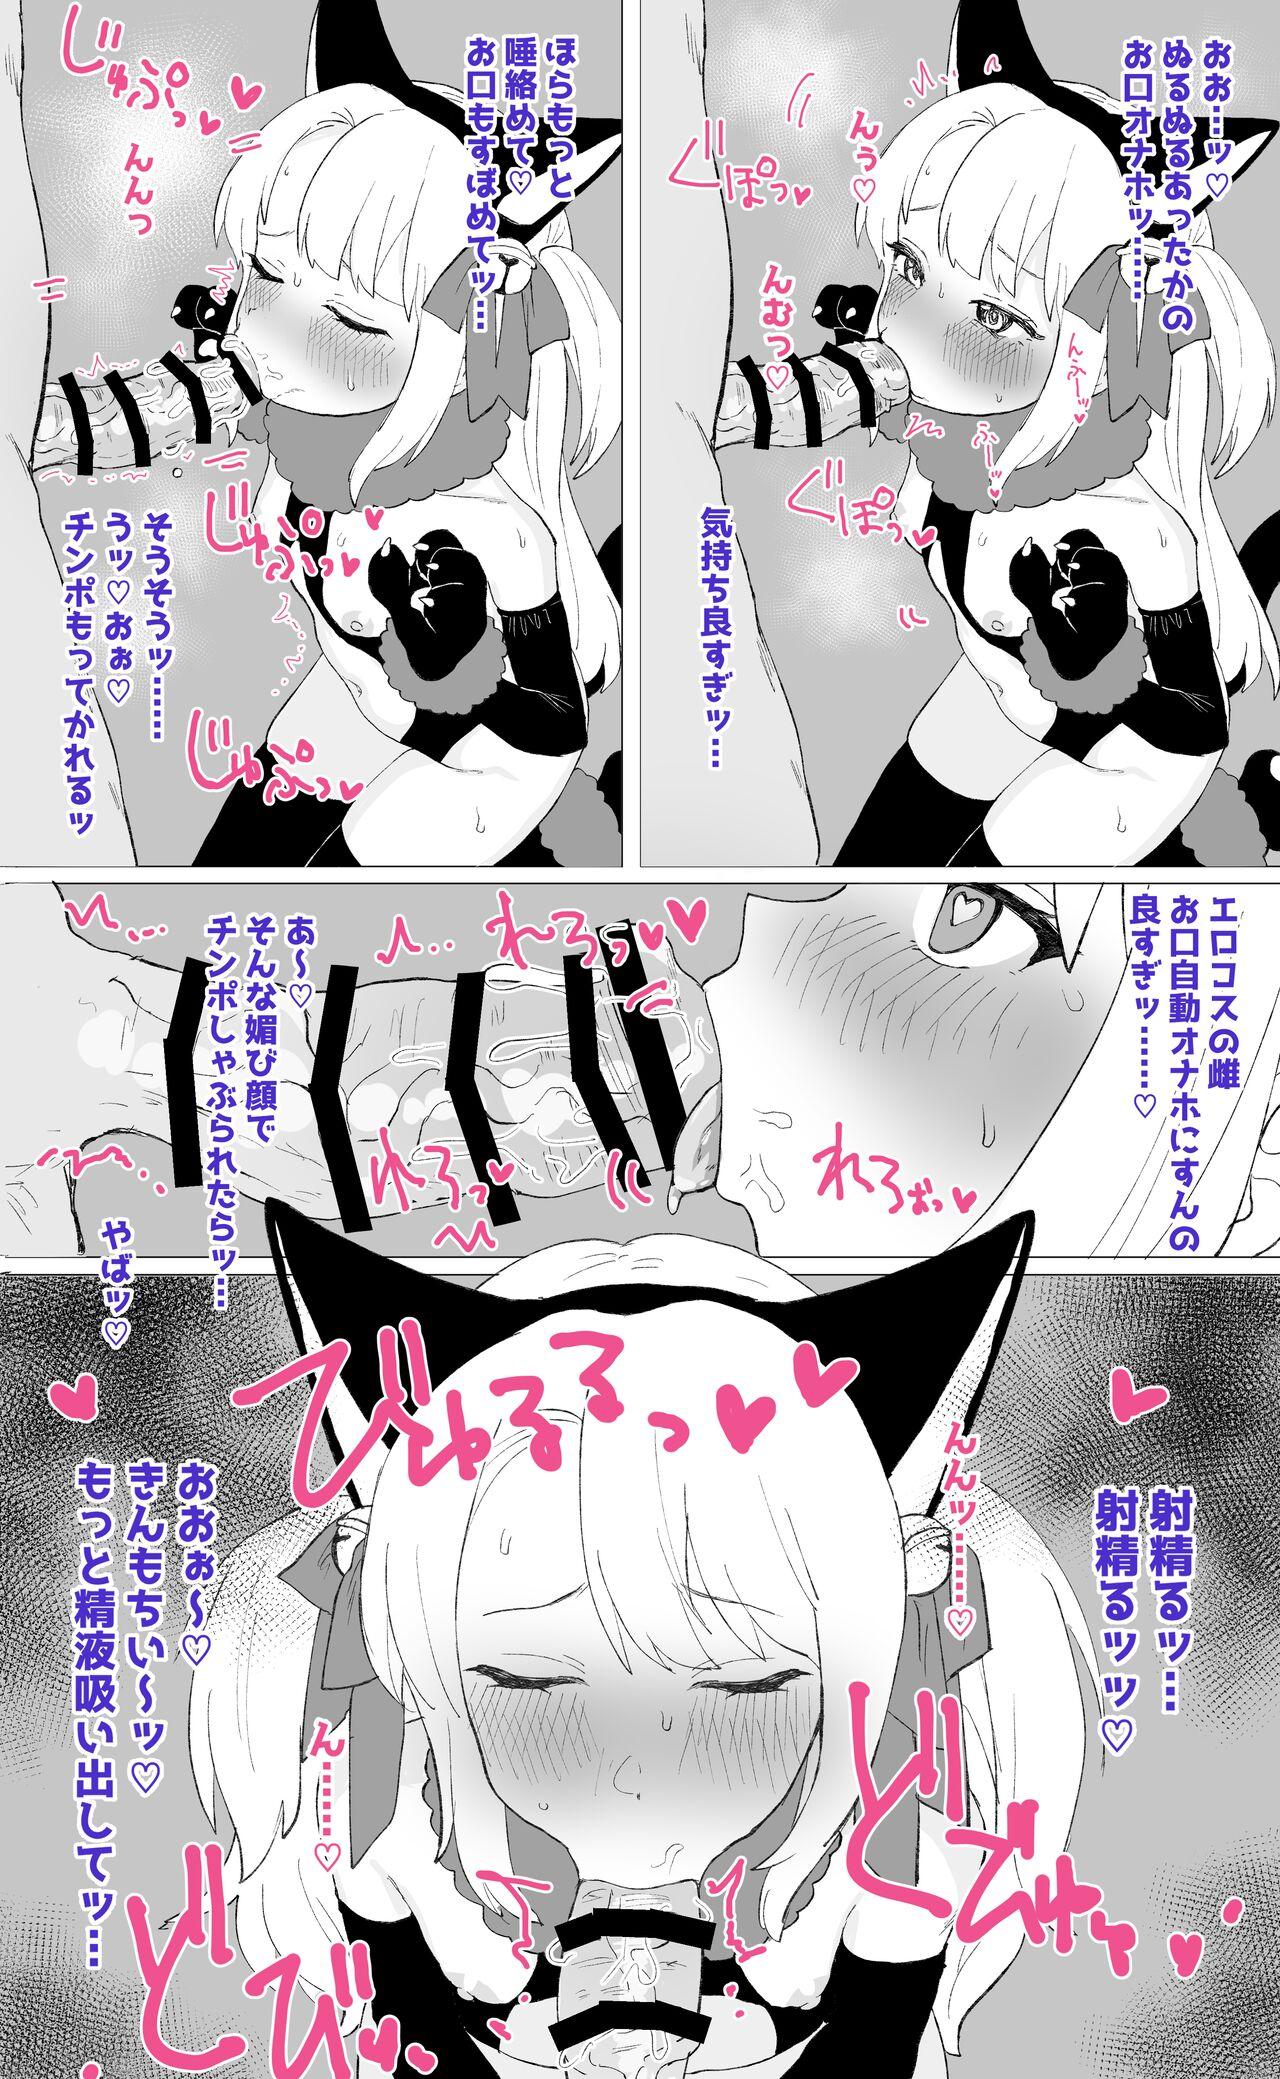 Young Tits Hitokuchi Echi Manga Tsumeawase - Original Big Ass - Picture 3